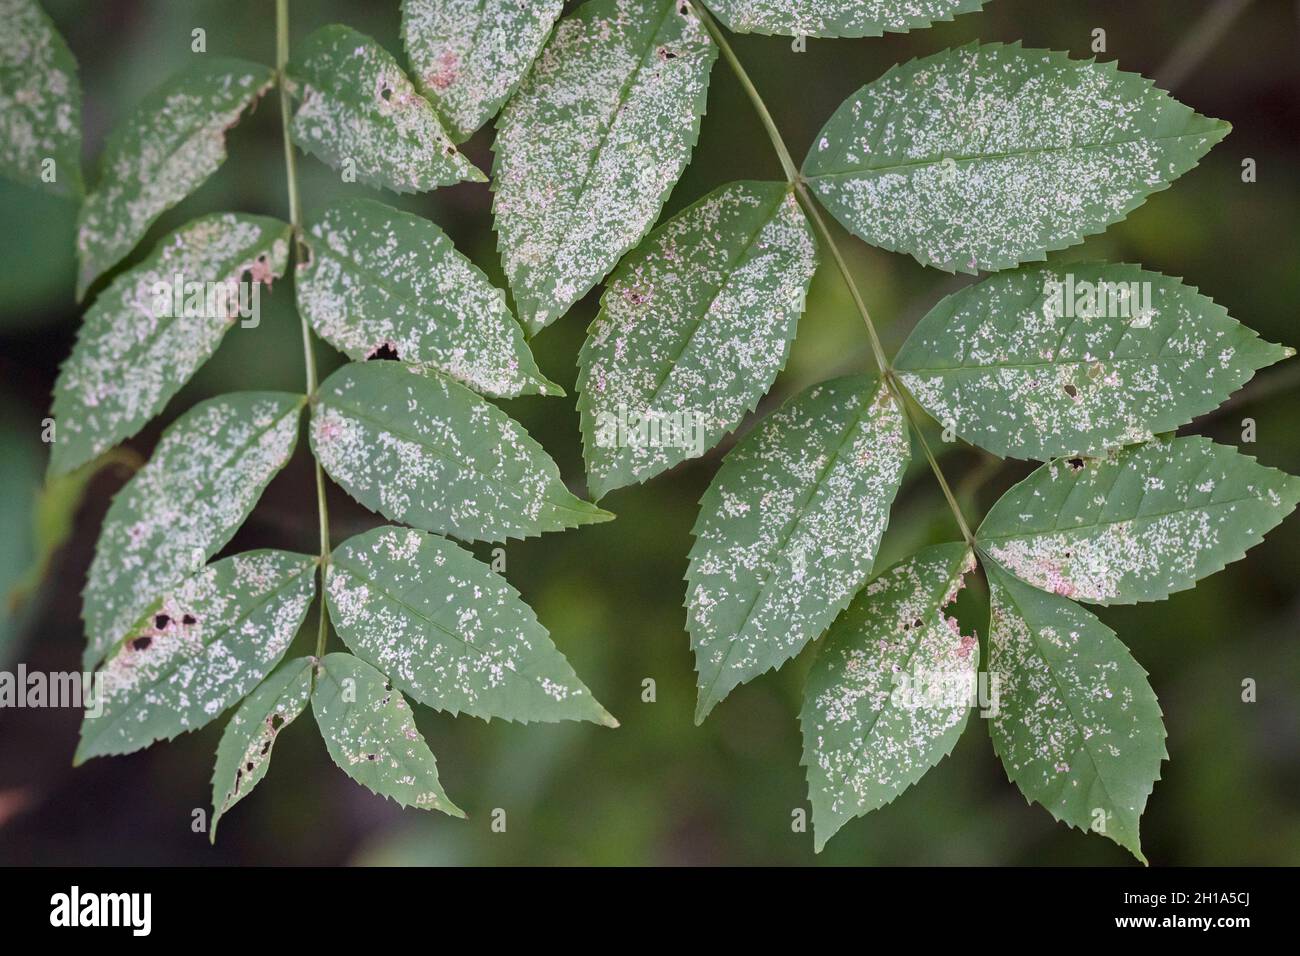 Le mildiou poudreux sur les feuilles est causé par le champignon de l'espèce Erysiphales. Banque D'Images